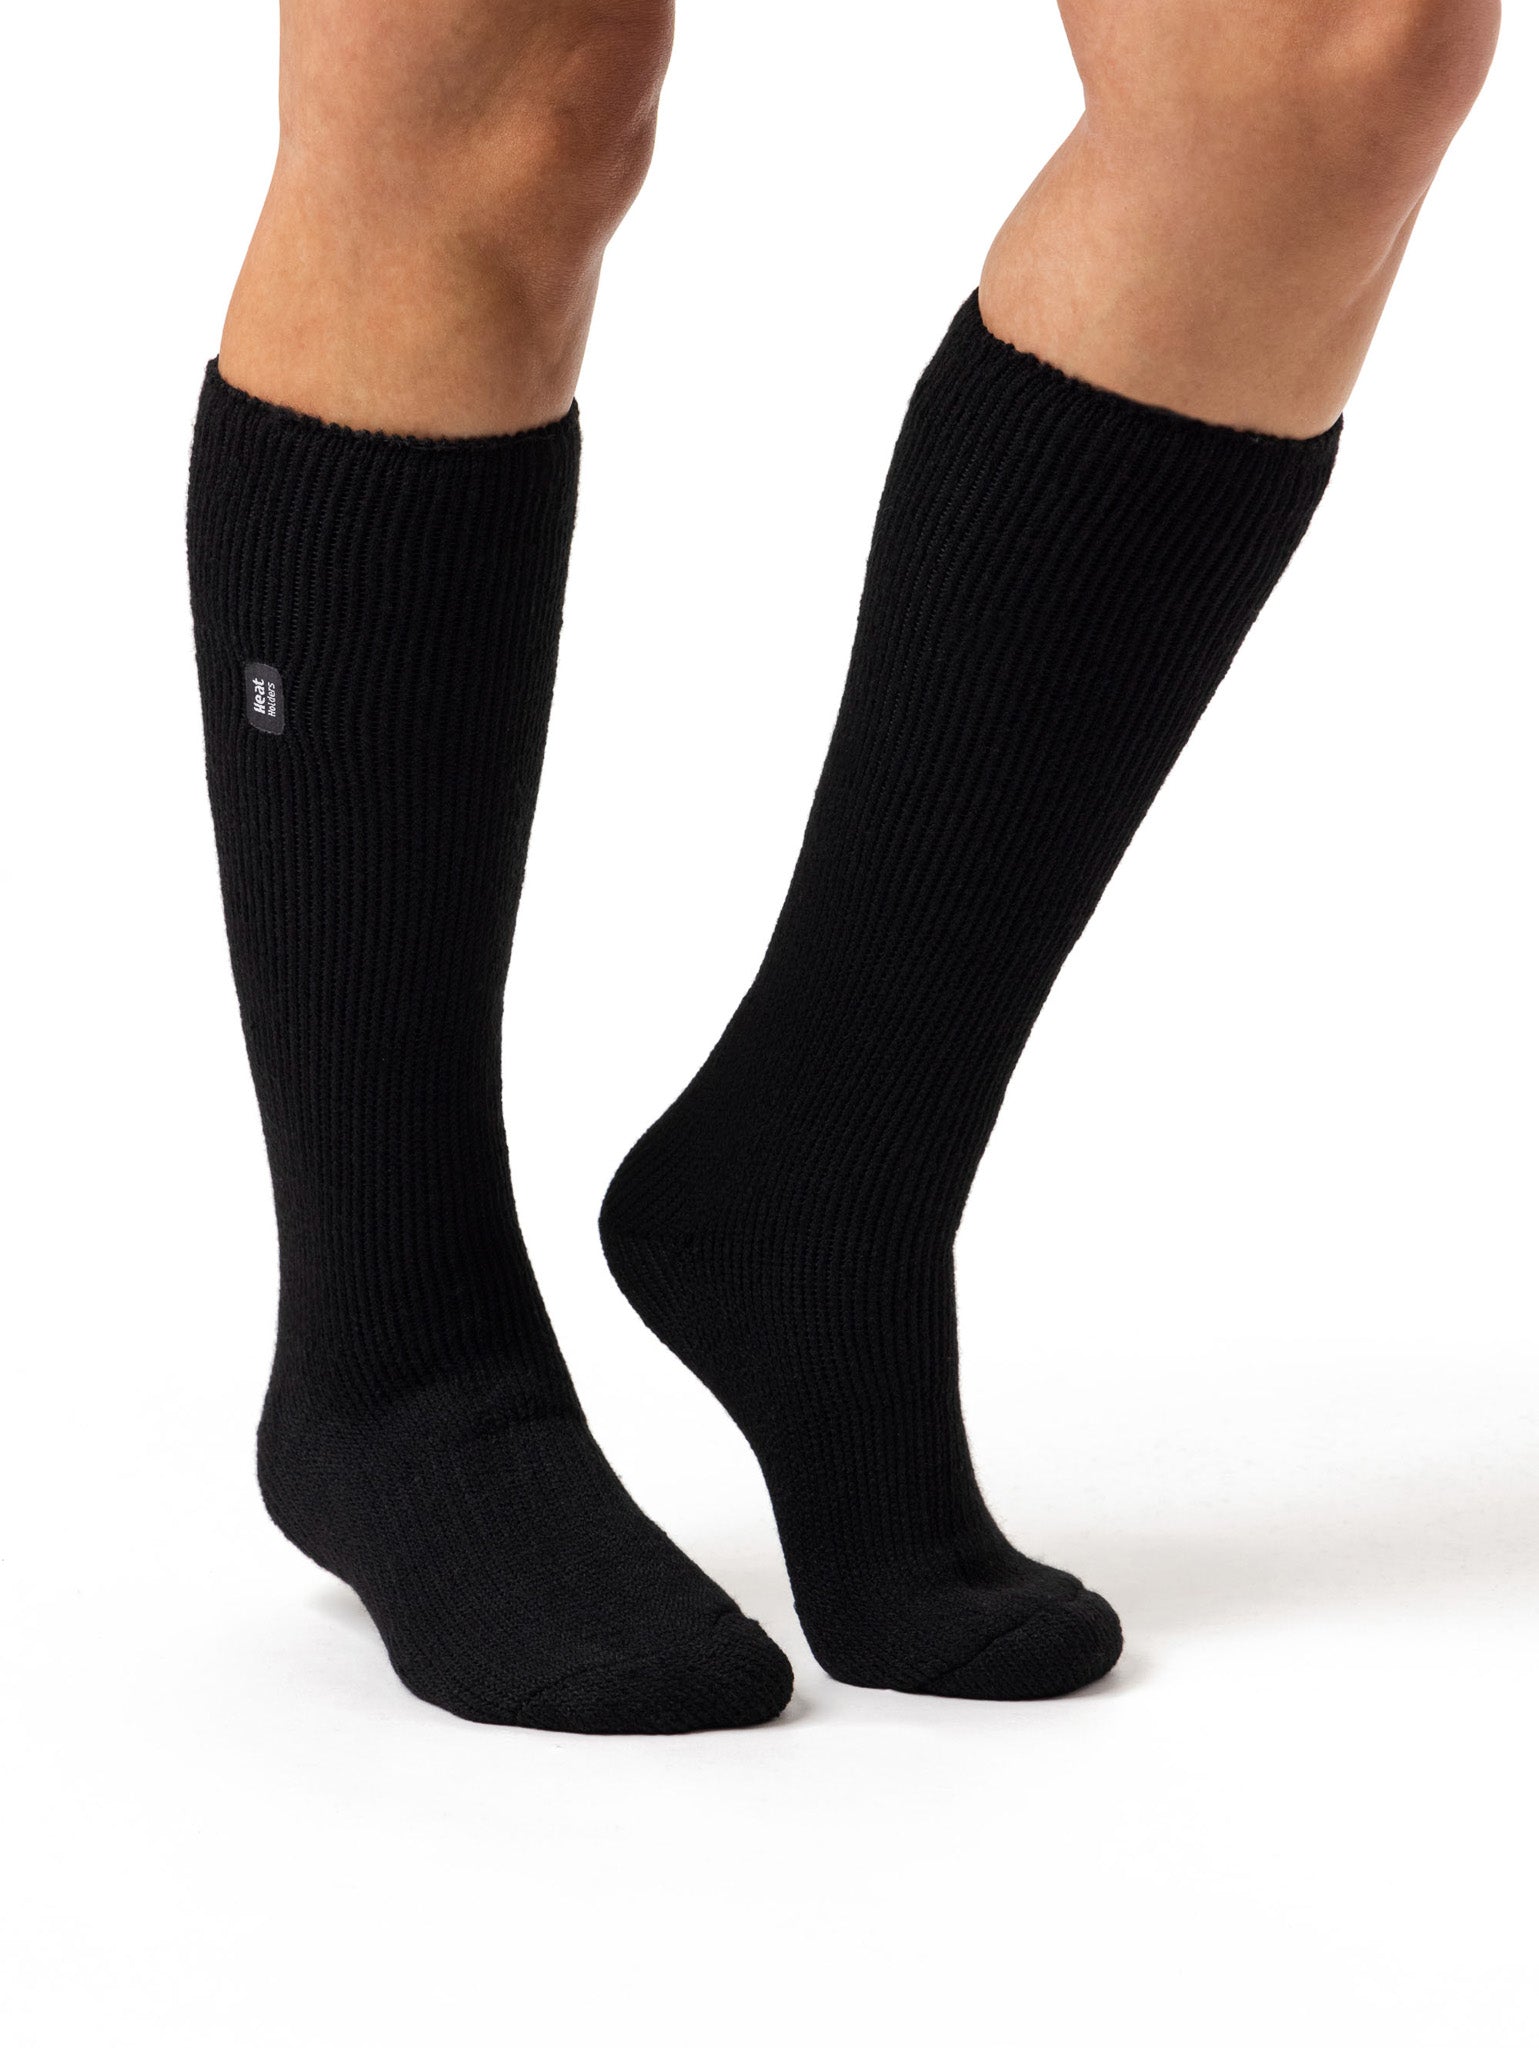 HEAT HOLDERS Lite Long Socks - Men's 6-11